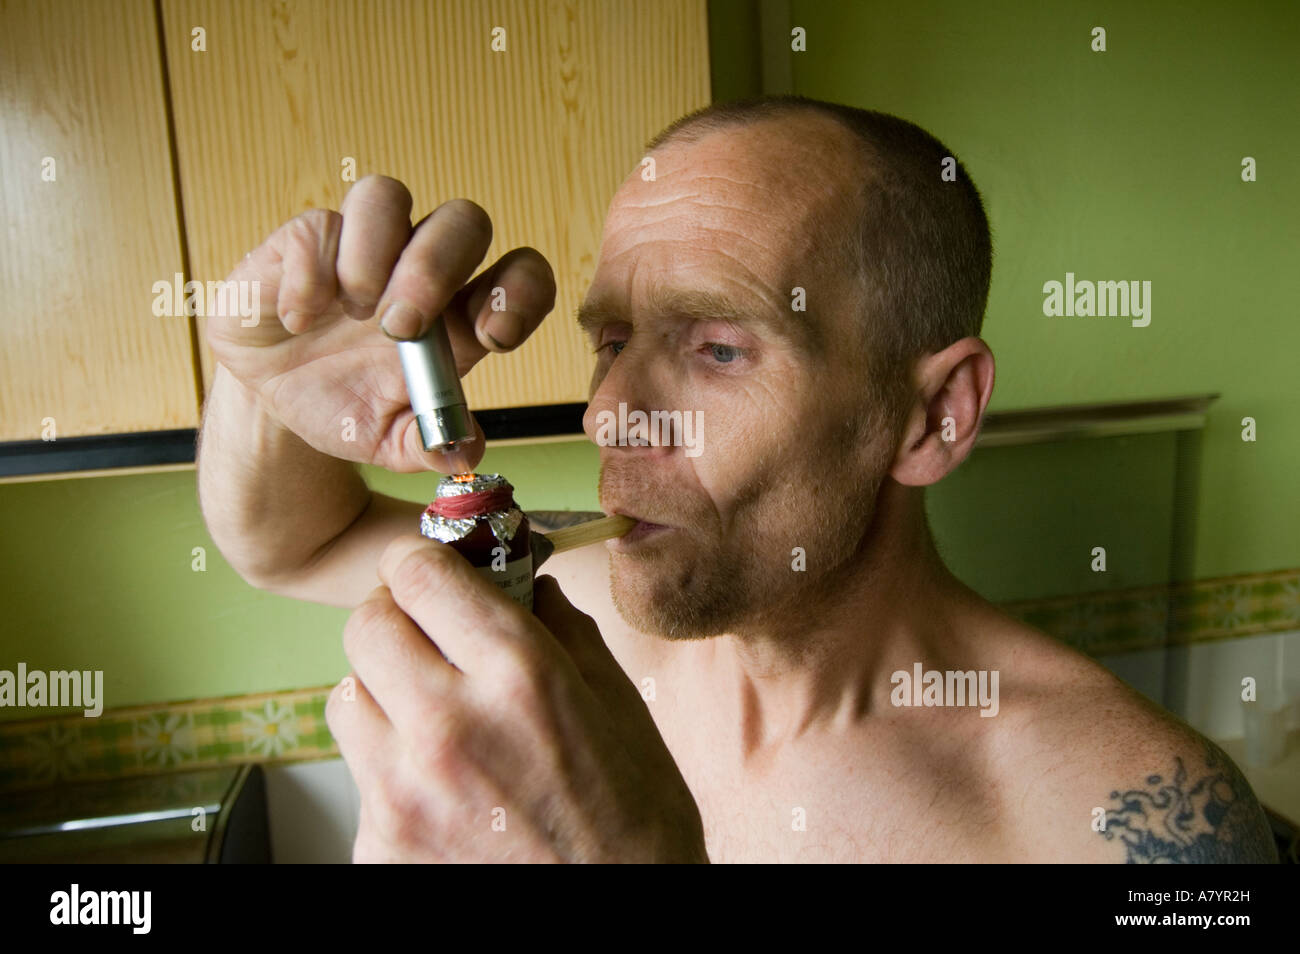 Man Smoking Crack Cocaine Sheffield UK Stock Photo